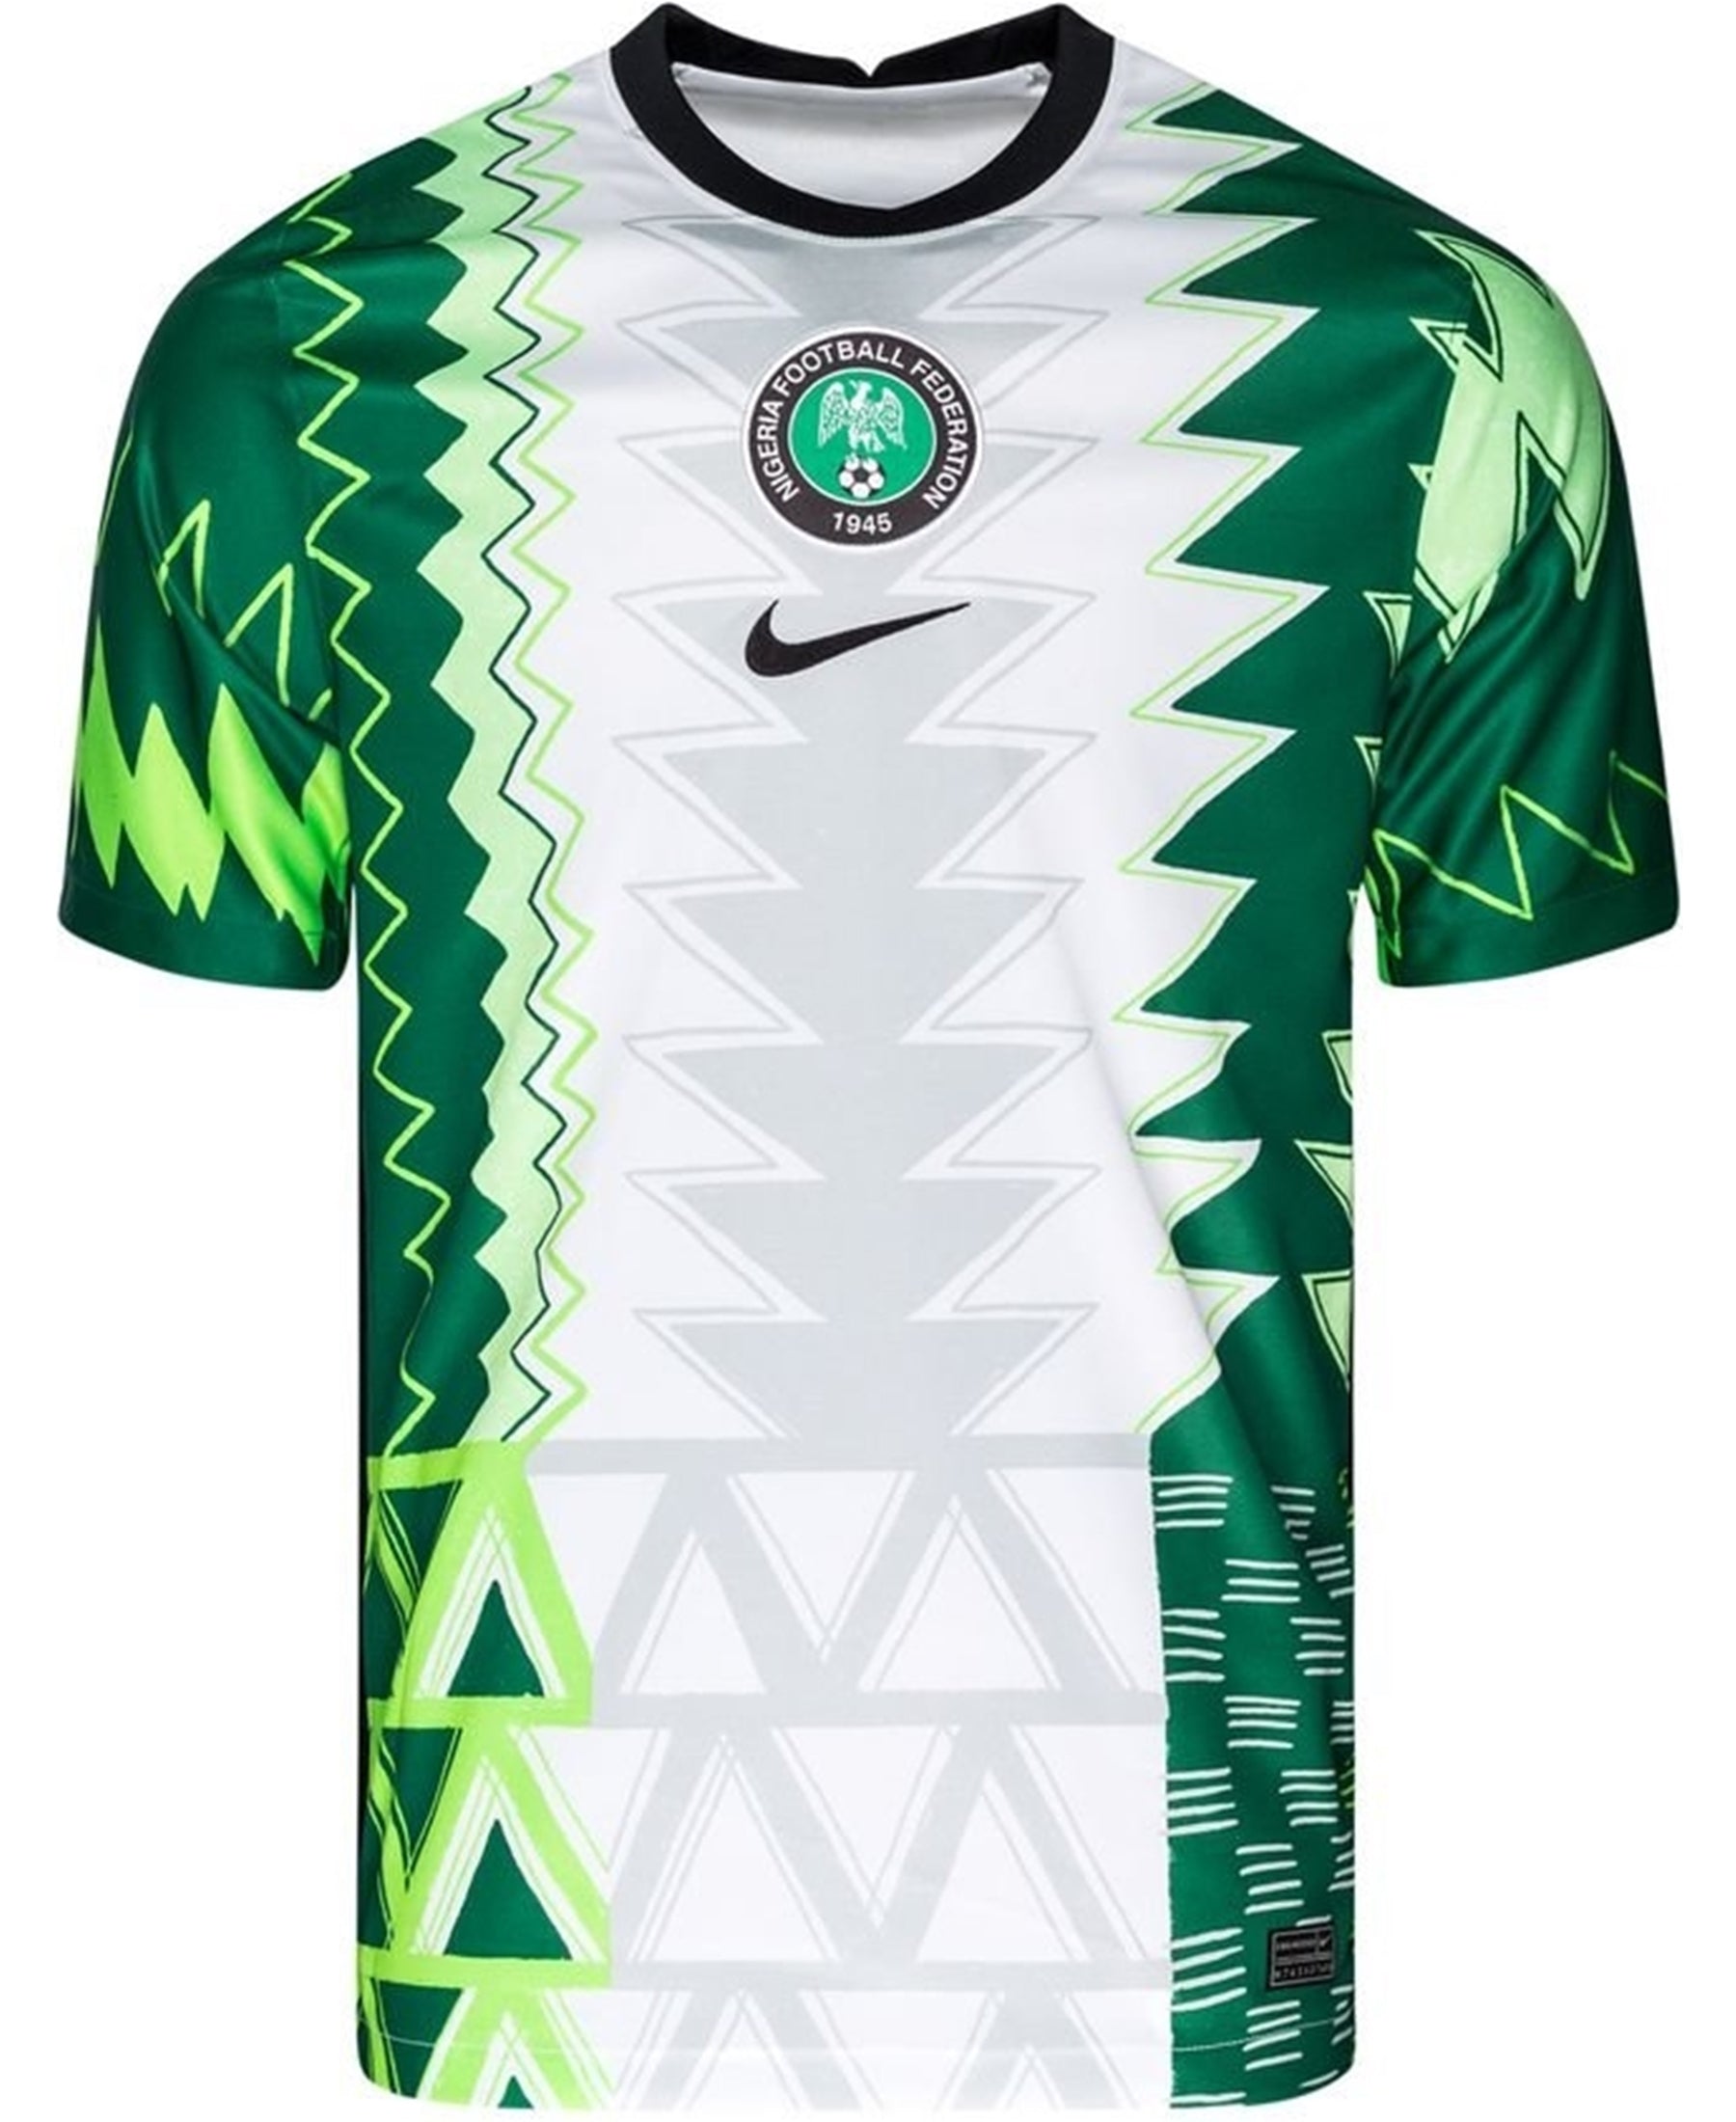 Holen Sie sich das offizielle Nike Nigeria NFF Stadium Heimtrikot 2021-2022 (CT4225-100) für echte Fans der nigerianischen Fußballnationalmannschaft. Dieses hochwertige Trikot ist nicht nur ein Muss für Anhänger der Super Eagles, sondern auch ein stylisches Fashion-Statement. Mit seinem markanten Design und den authentischen Details ist es perfekt für Spiele, Training oder den Alltag. Bestellen Sie jetzt bei SHOP4TEAMSPORT und zeigen Sie Ihre Unterstützung für Nigeria.